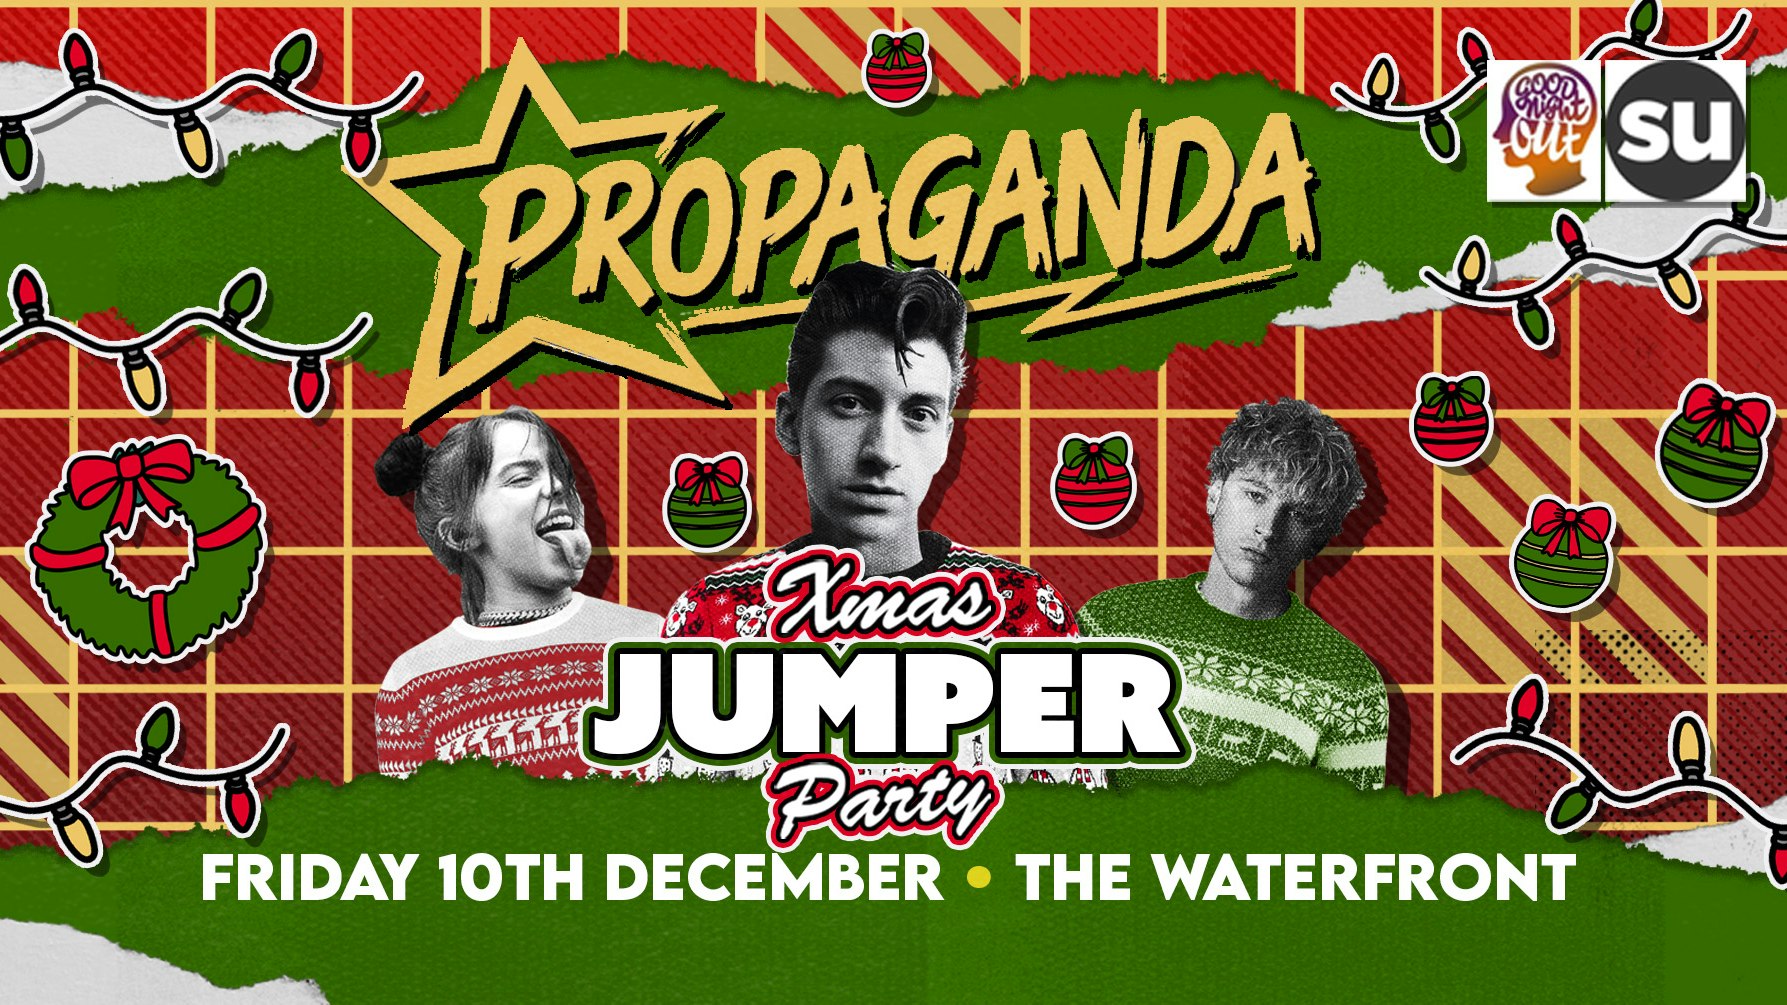 Propaganda Norwich – Xmas Jumper Party